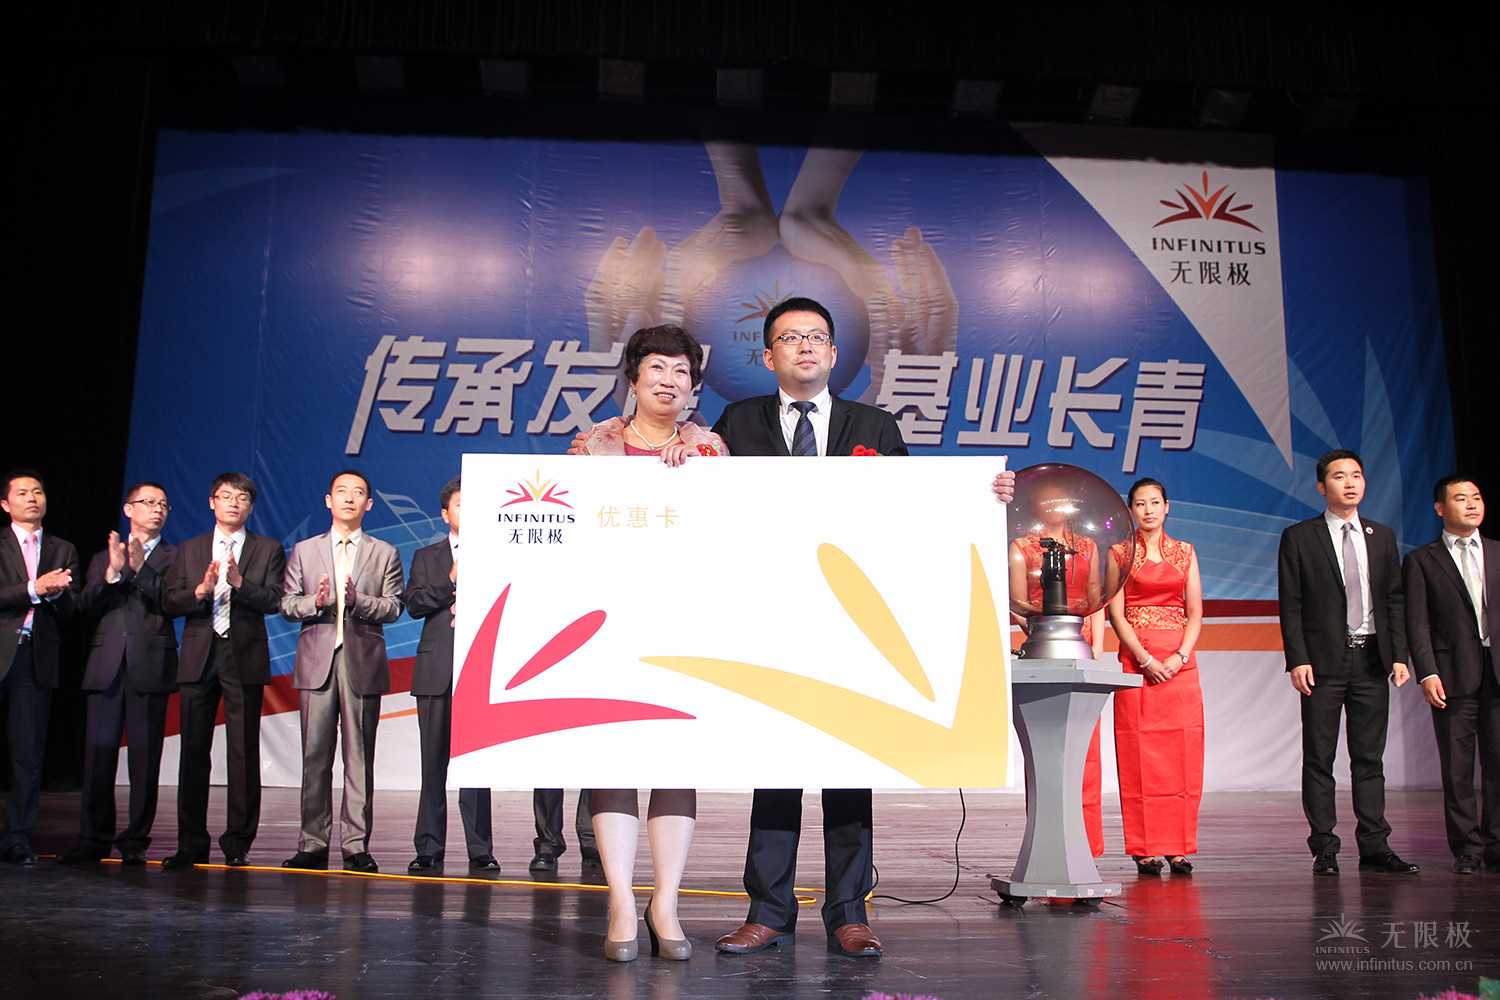 （加一張）2014年6月20日上海，在無限極首場“夢想接力”活動上，周英峰把自己奮斗了8年的無限極事業傳承給了兒子楊罡。